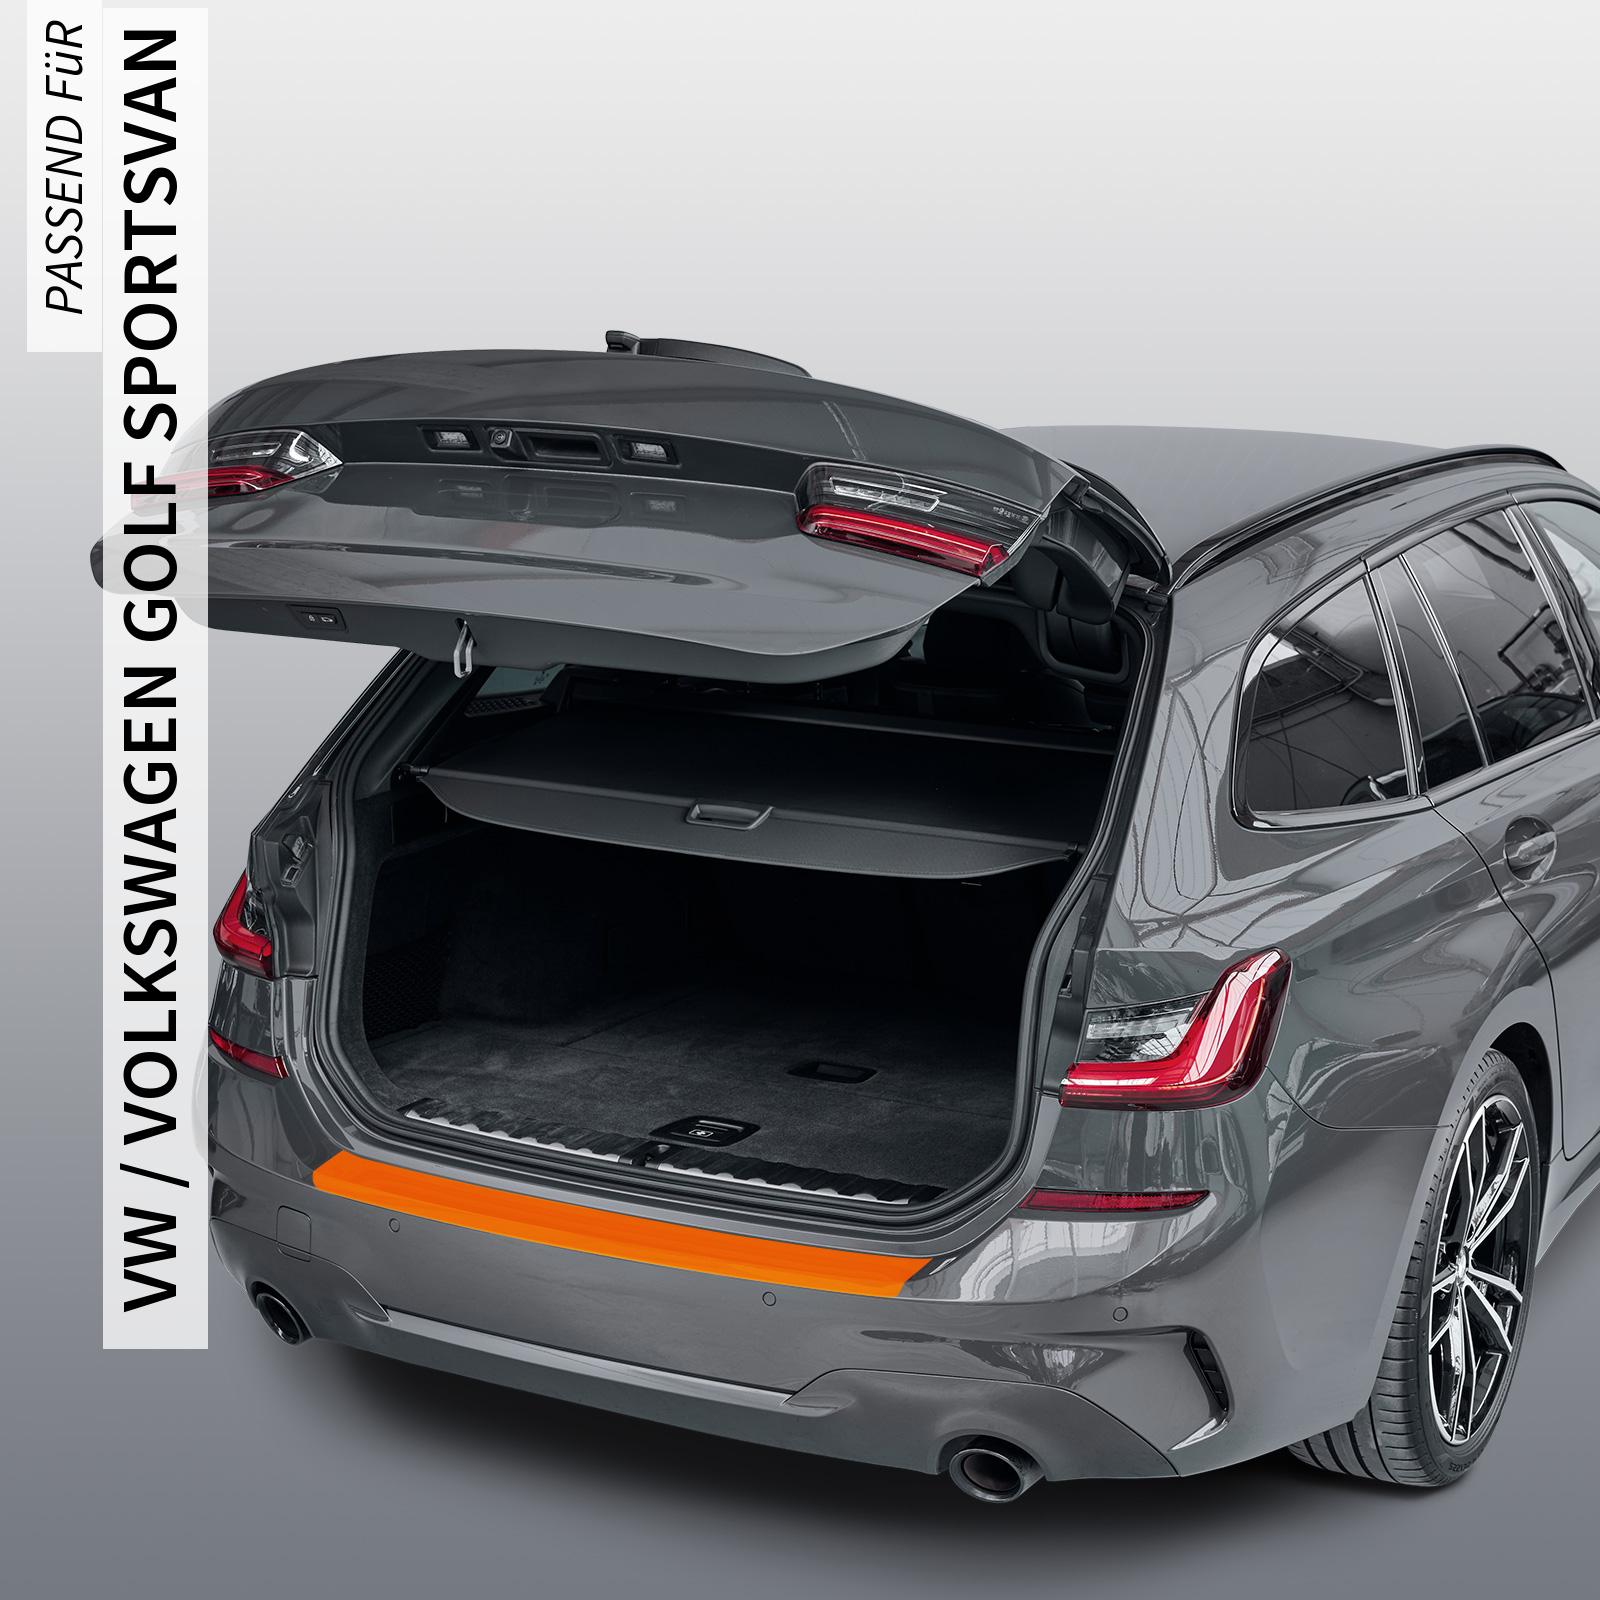 Ladekantenschutzfolie - Transparent Glatt Hochglänzend 150 µm stark für VW / Volkswagen Golf Sportsvan ab BJ 04/2014